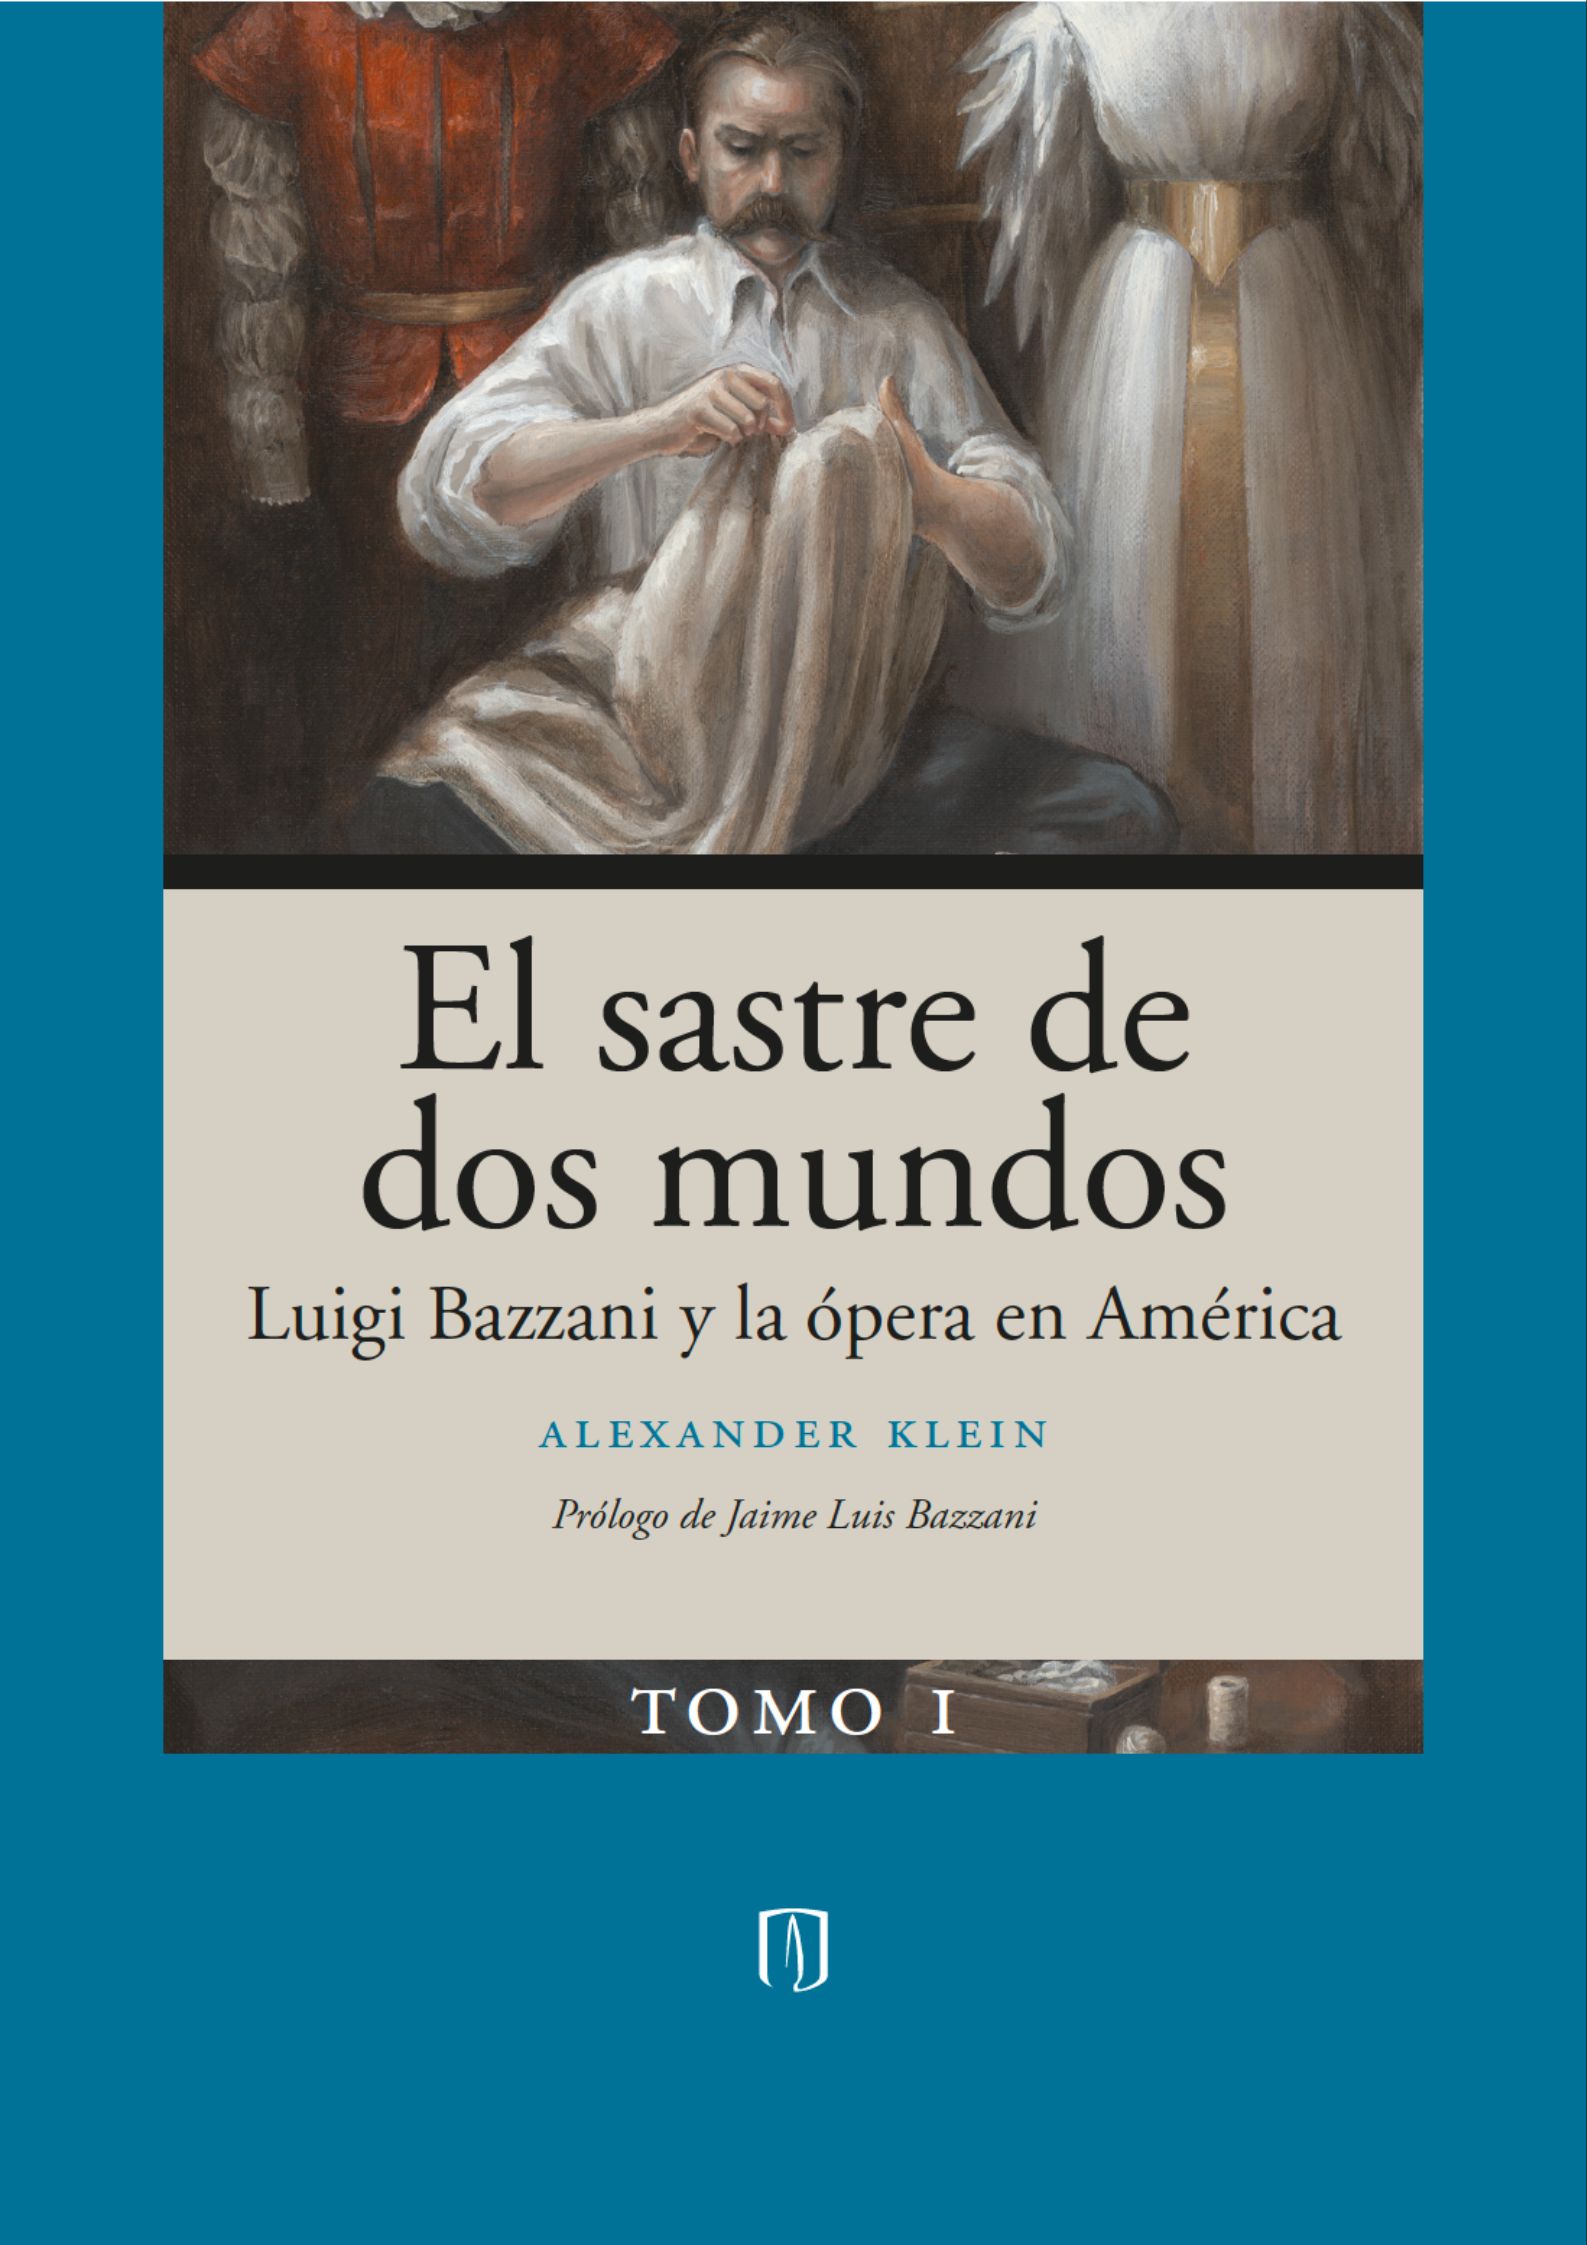 El sastre de dos mundos. Luigi Bazzani y la ópera en América – Tomo I